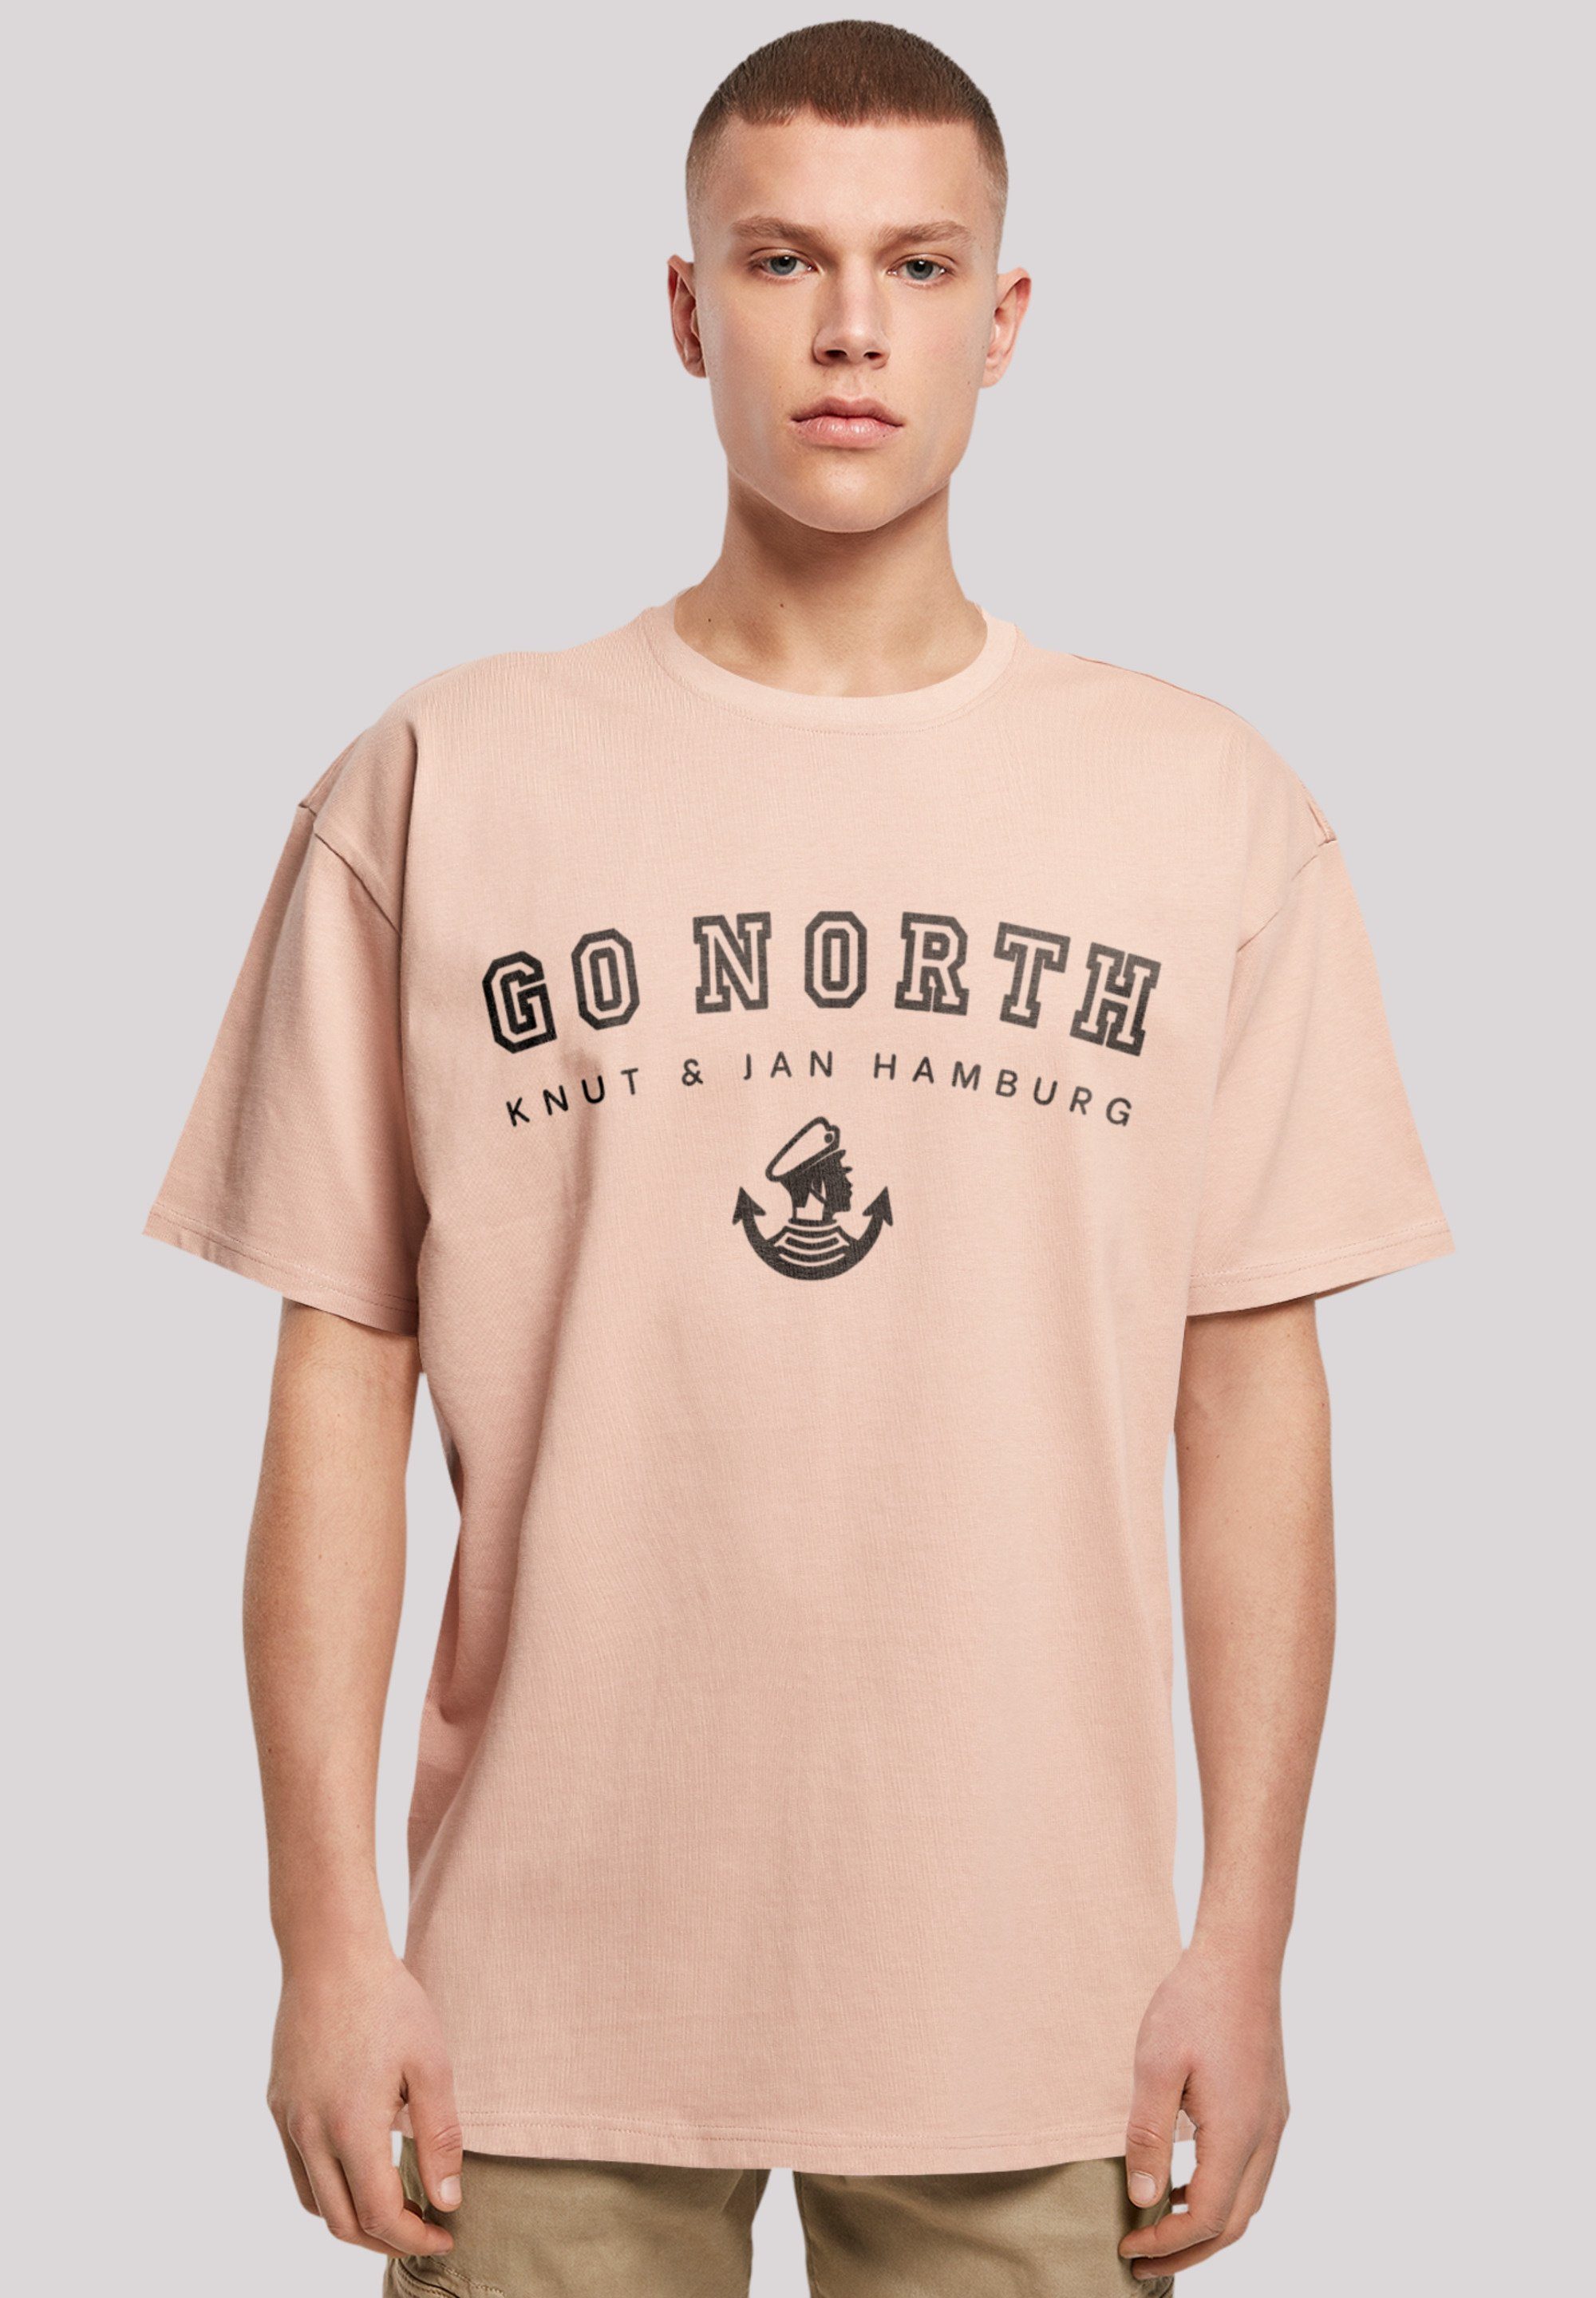 T-Shirt North Knut & Print Hamburg Go amber F4NT4STIC Jan